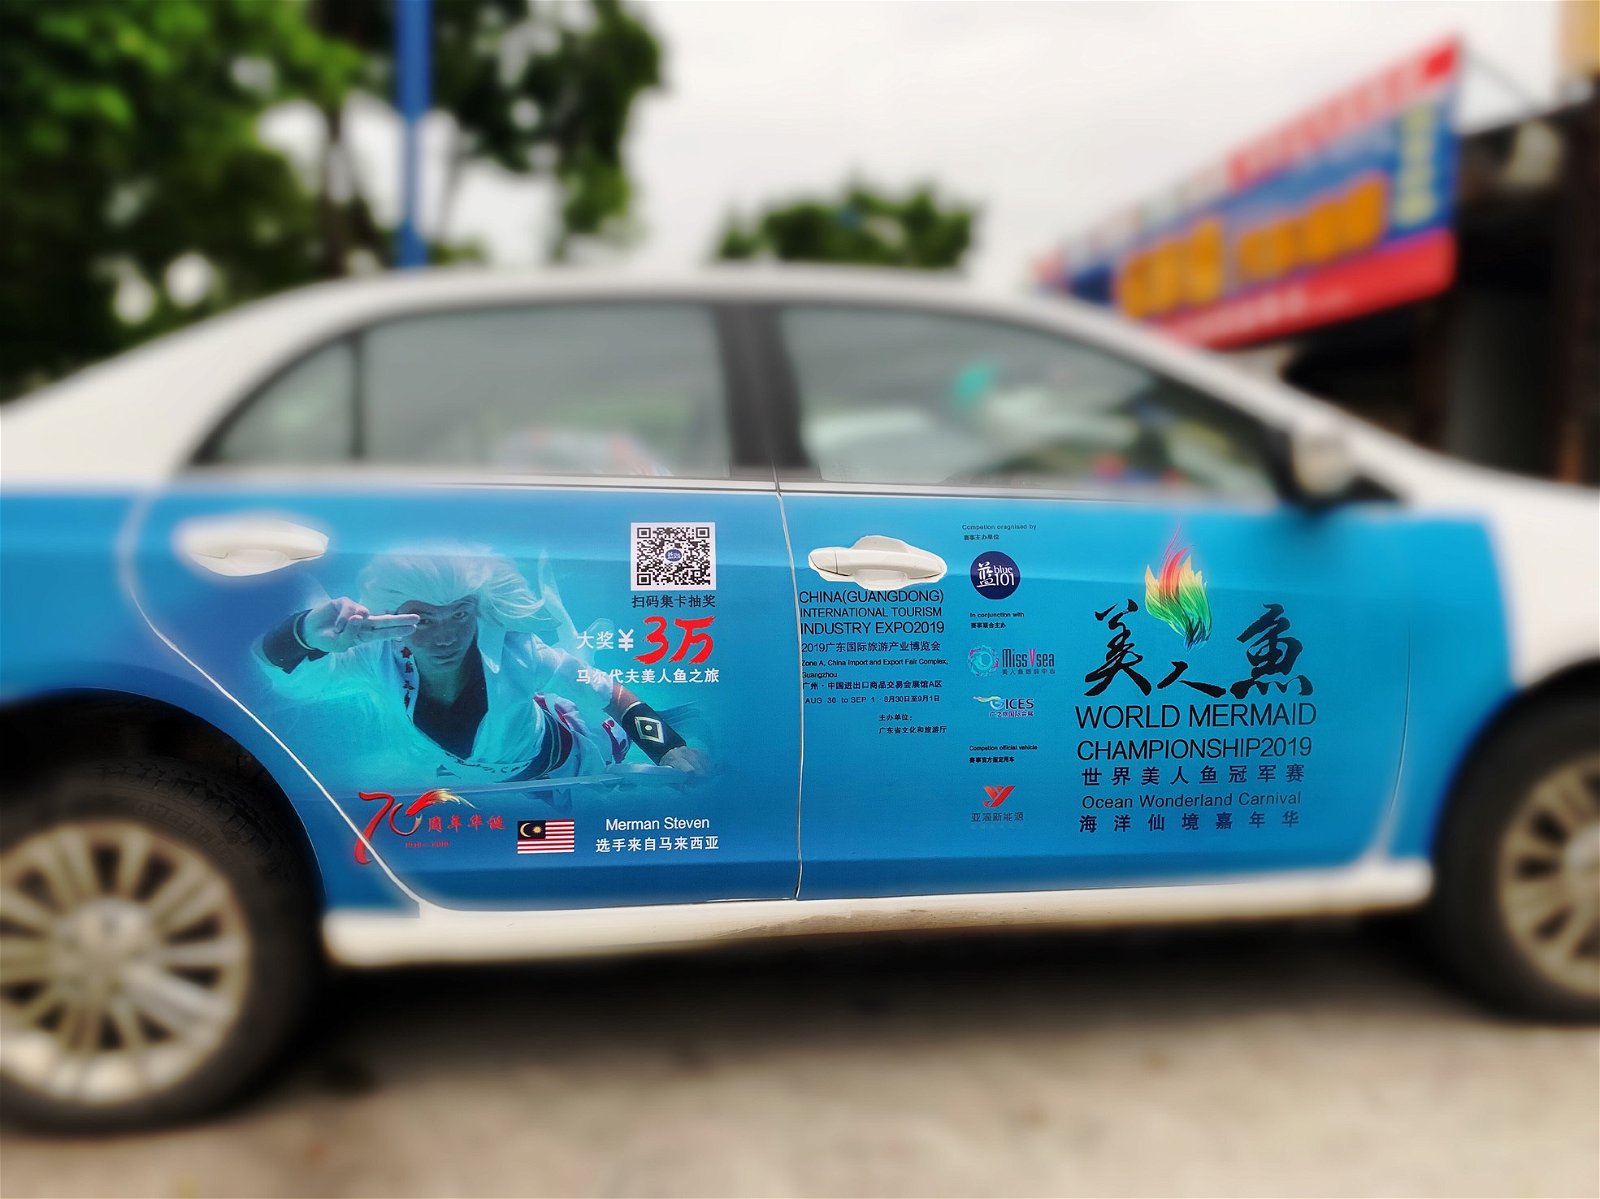 2019世界美人鱼冠军赛的宣传活动已盛大开展，广东省随处可见贴上海报的“滴滴”（电召车）。图为贴有陈虎巡照片的宣传车。